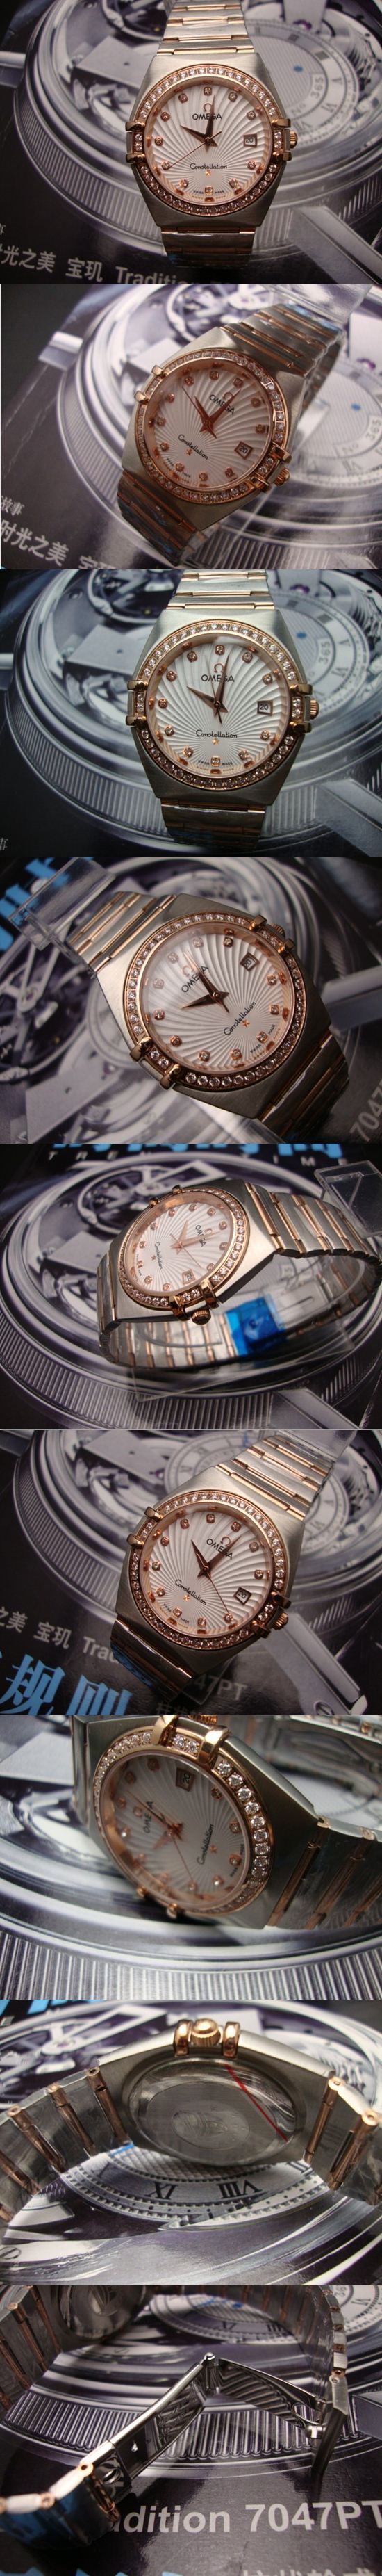 おしゃれなブランド時計がOMEGA-オメガ-腕時計 オメガ 男/女性用腕時計 OMEGA-N-002Aを提供します.